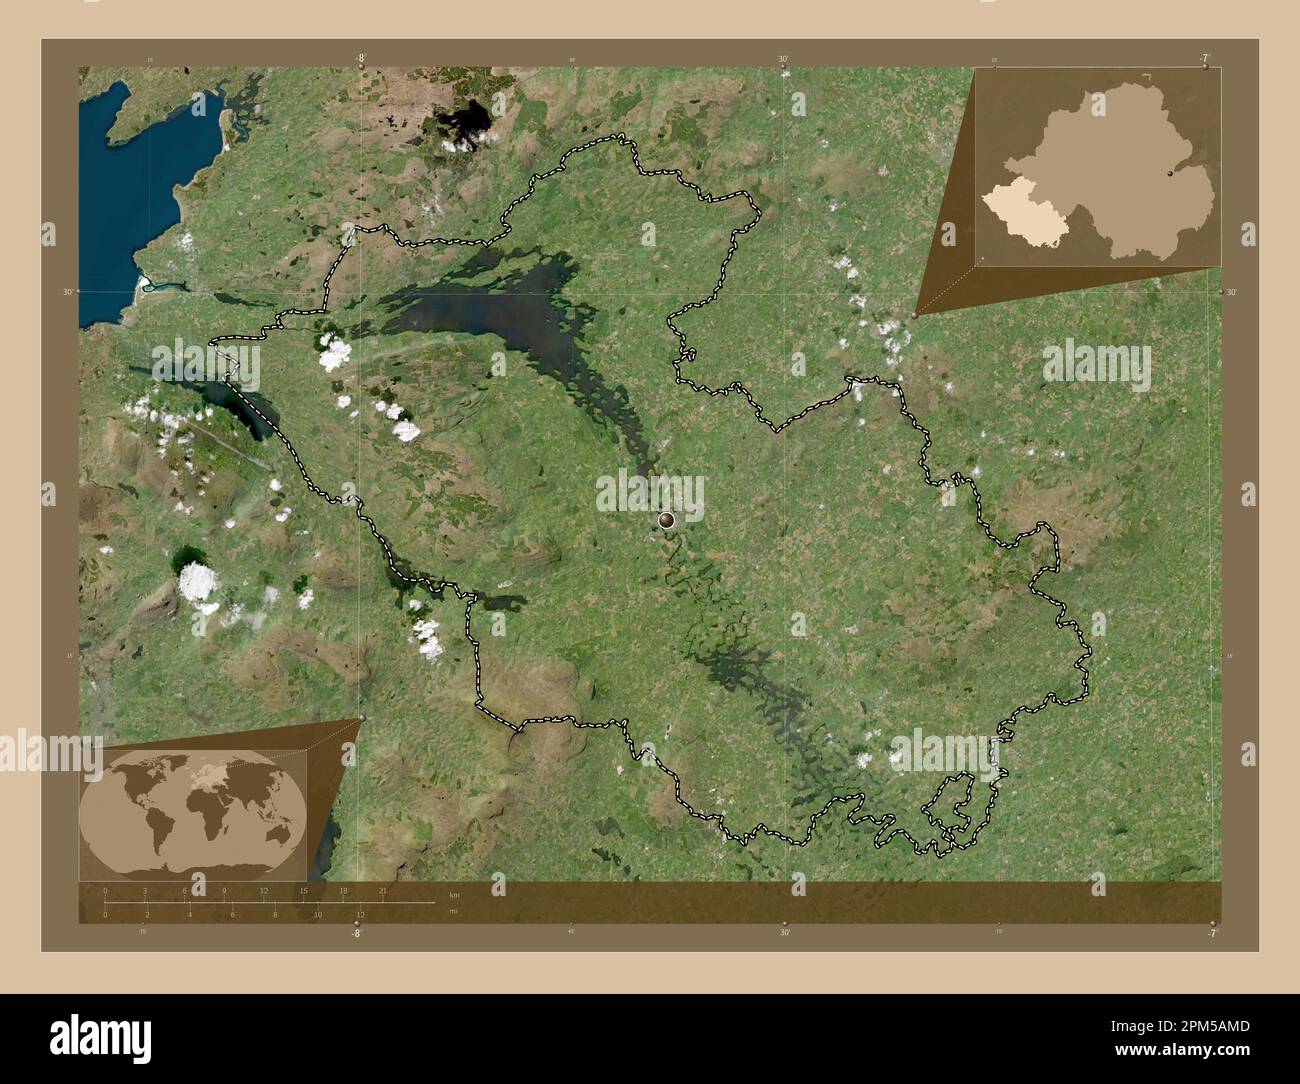 Fermanagh, Region Nordirland. Satellitenkarte mit niedriger Auflösung. Eckkarten für zusätzliche Standorte Stockfoto